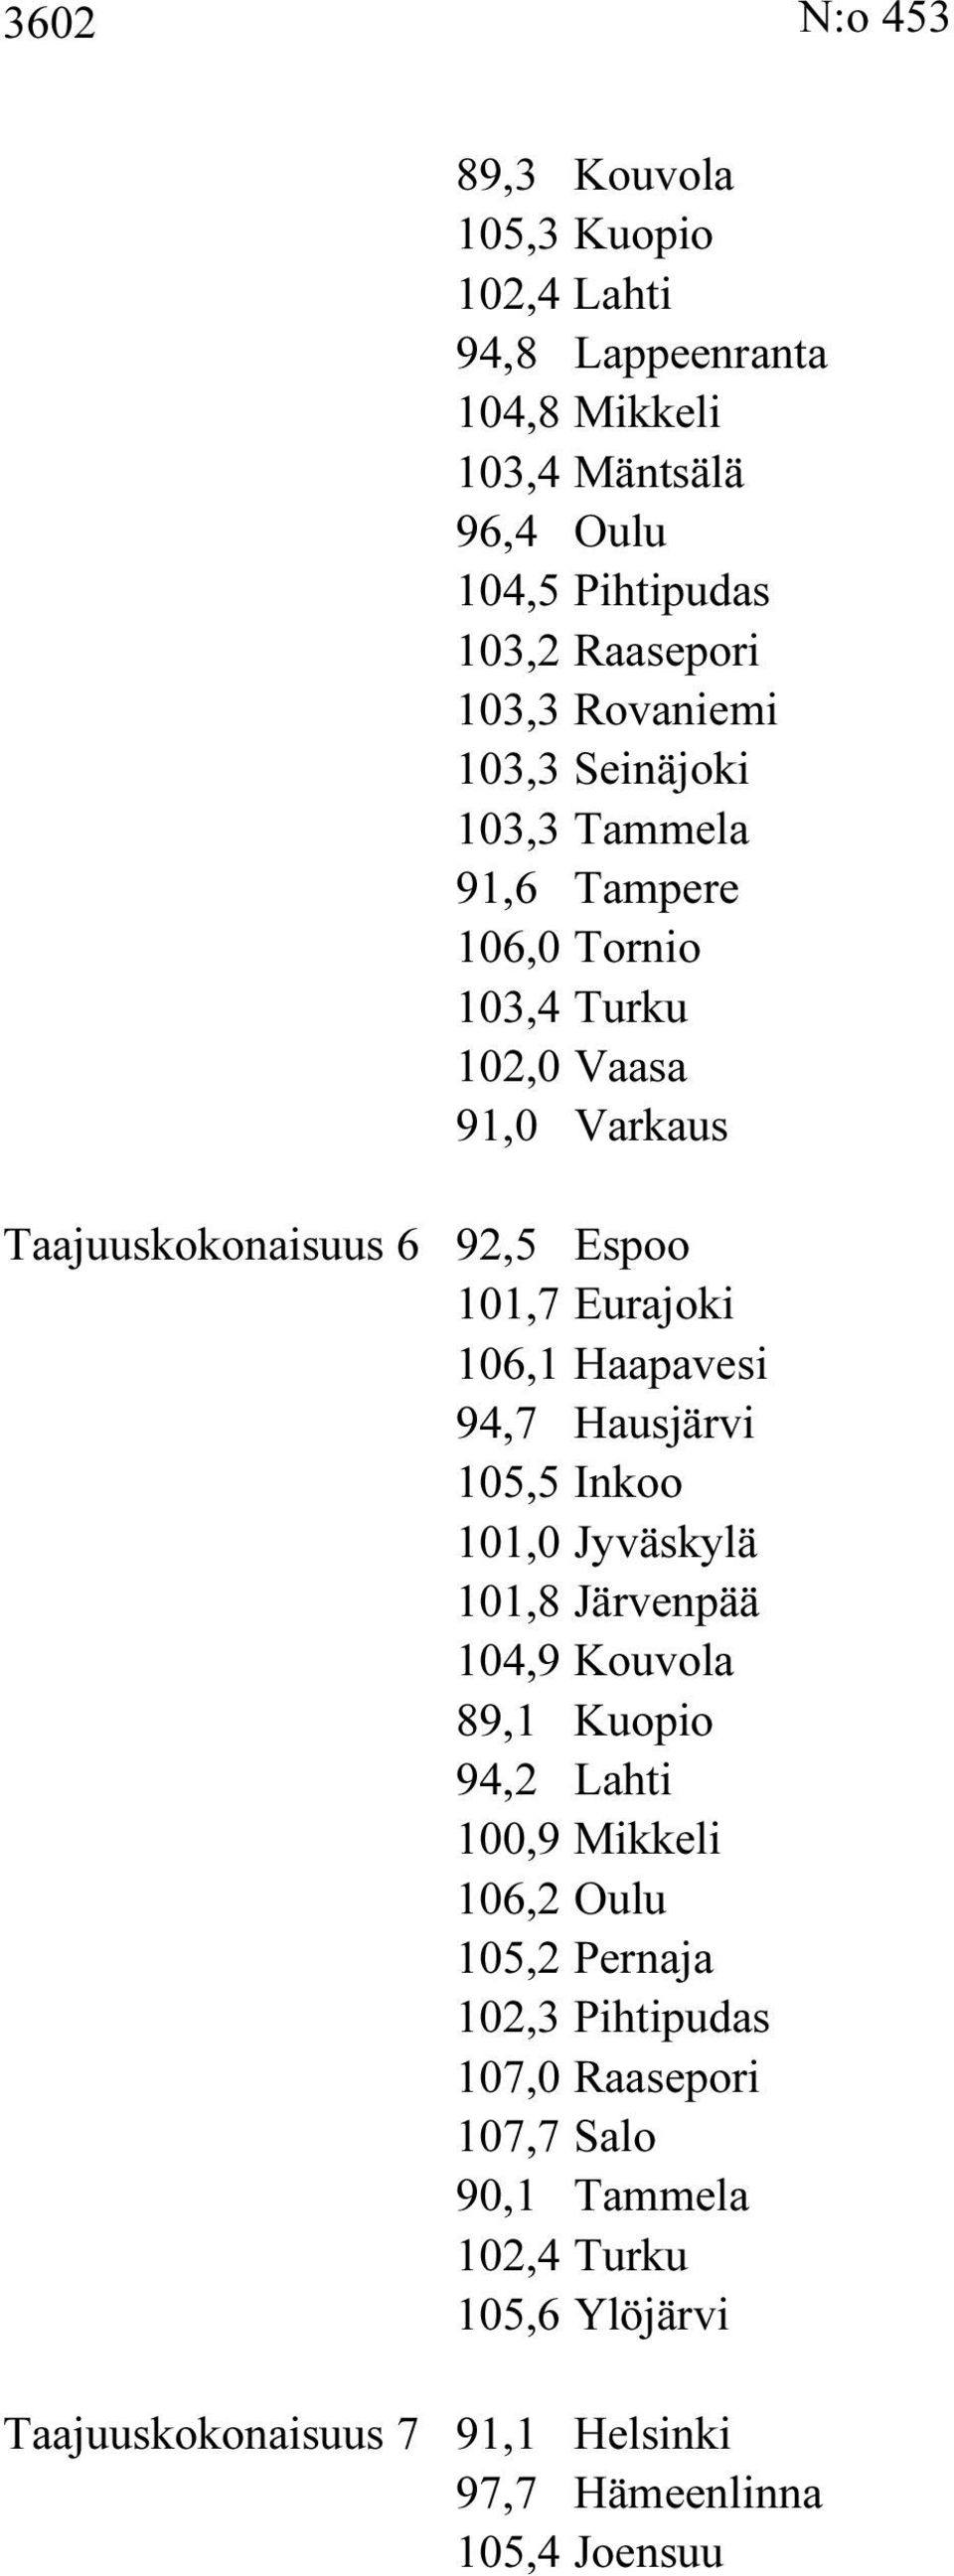 106,1 Haapavesi 94,7 Hausjärvi 105,5 Inkoo 101,0 Jyväskylä 101,8 Järvenpää 104,9 Kouvola 89,1 Kuopio 94,2 Lahti 100,9 Mikkeli 106,2 Oulu 105,2